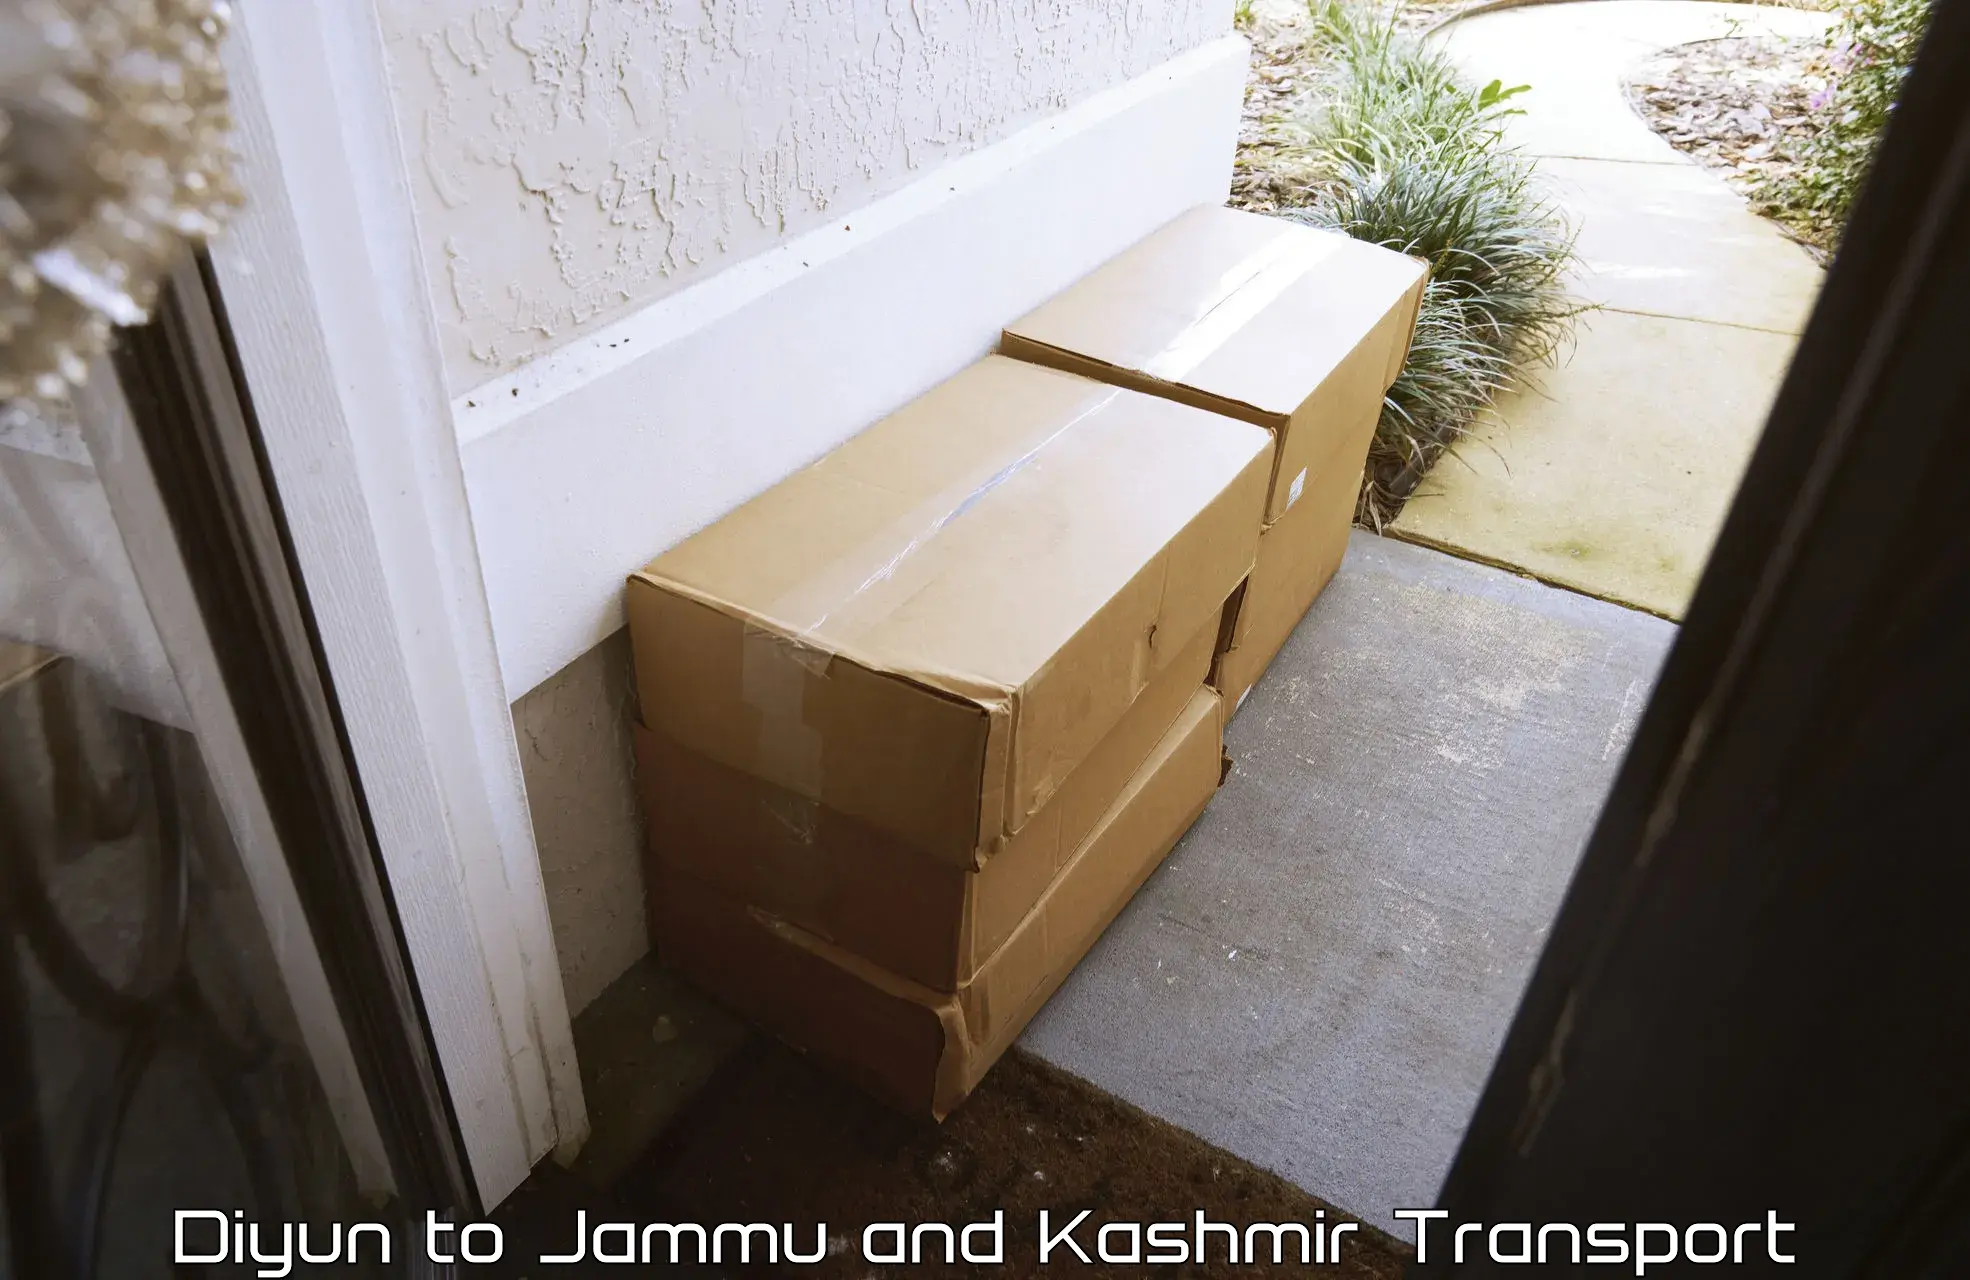 Shipping partner Diyun to Jammu